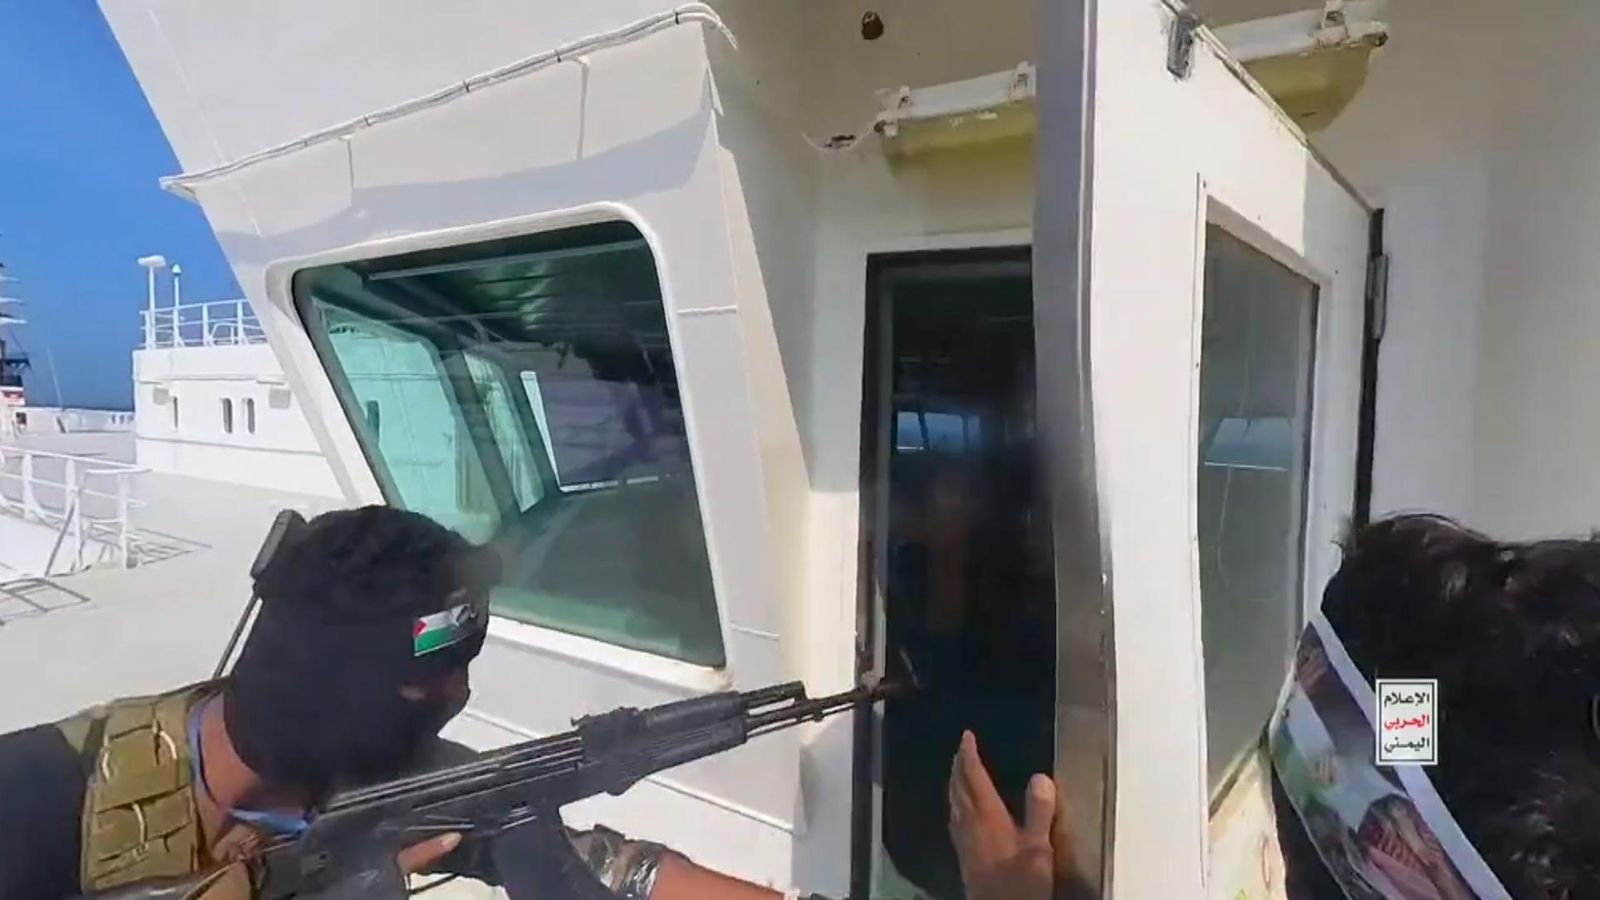 مسلح حوثي يقتحم قمرة قيادة السفينة المختطفة يوم الأحد الماضي